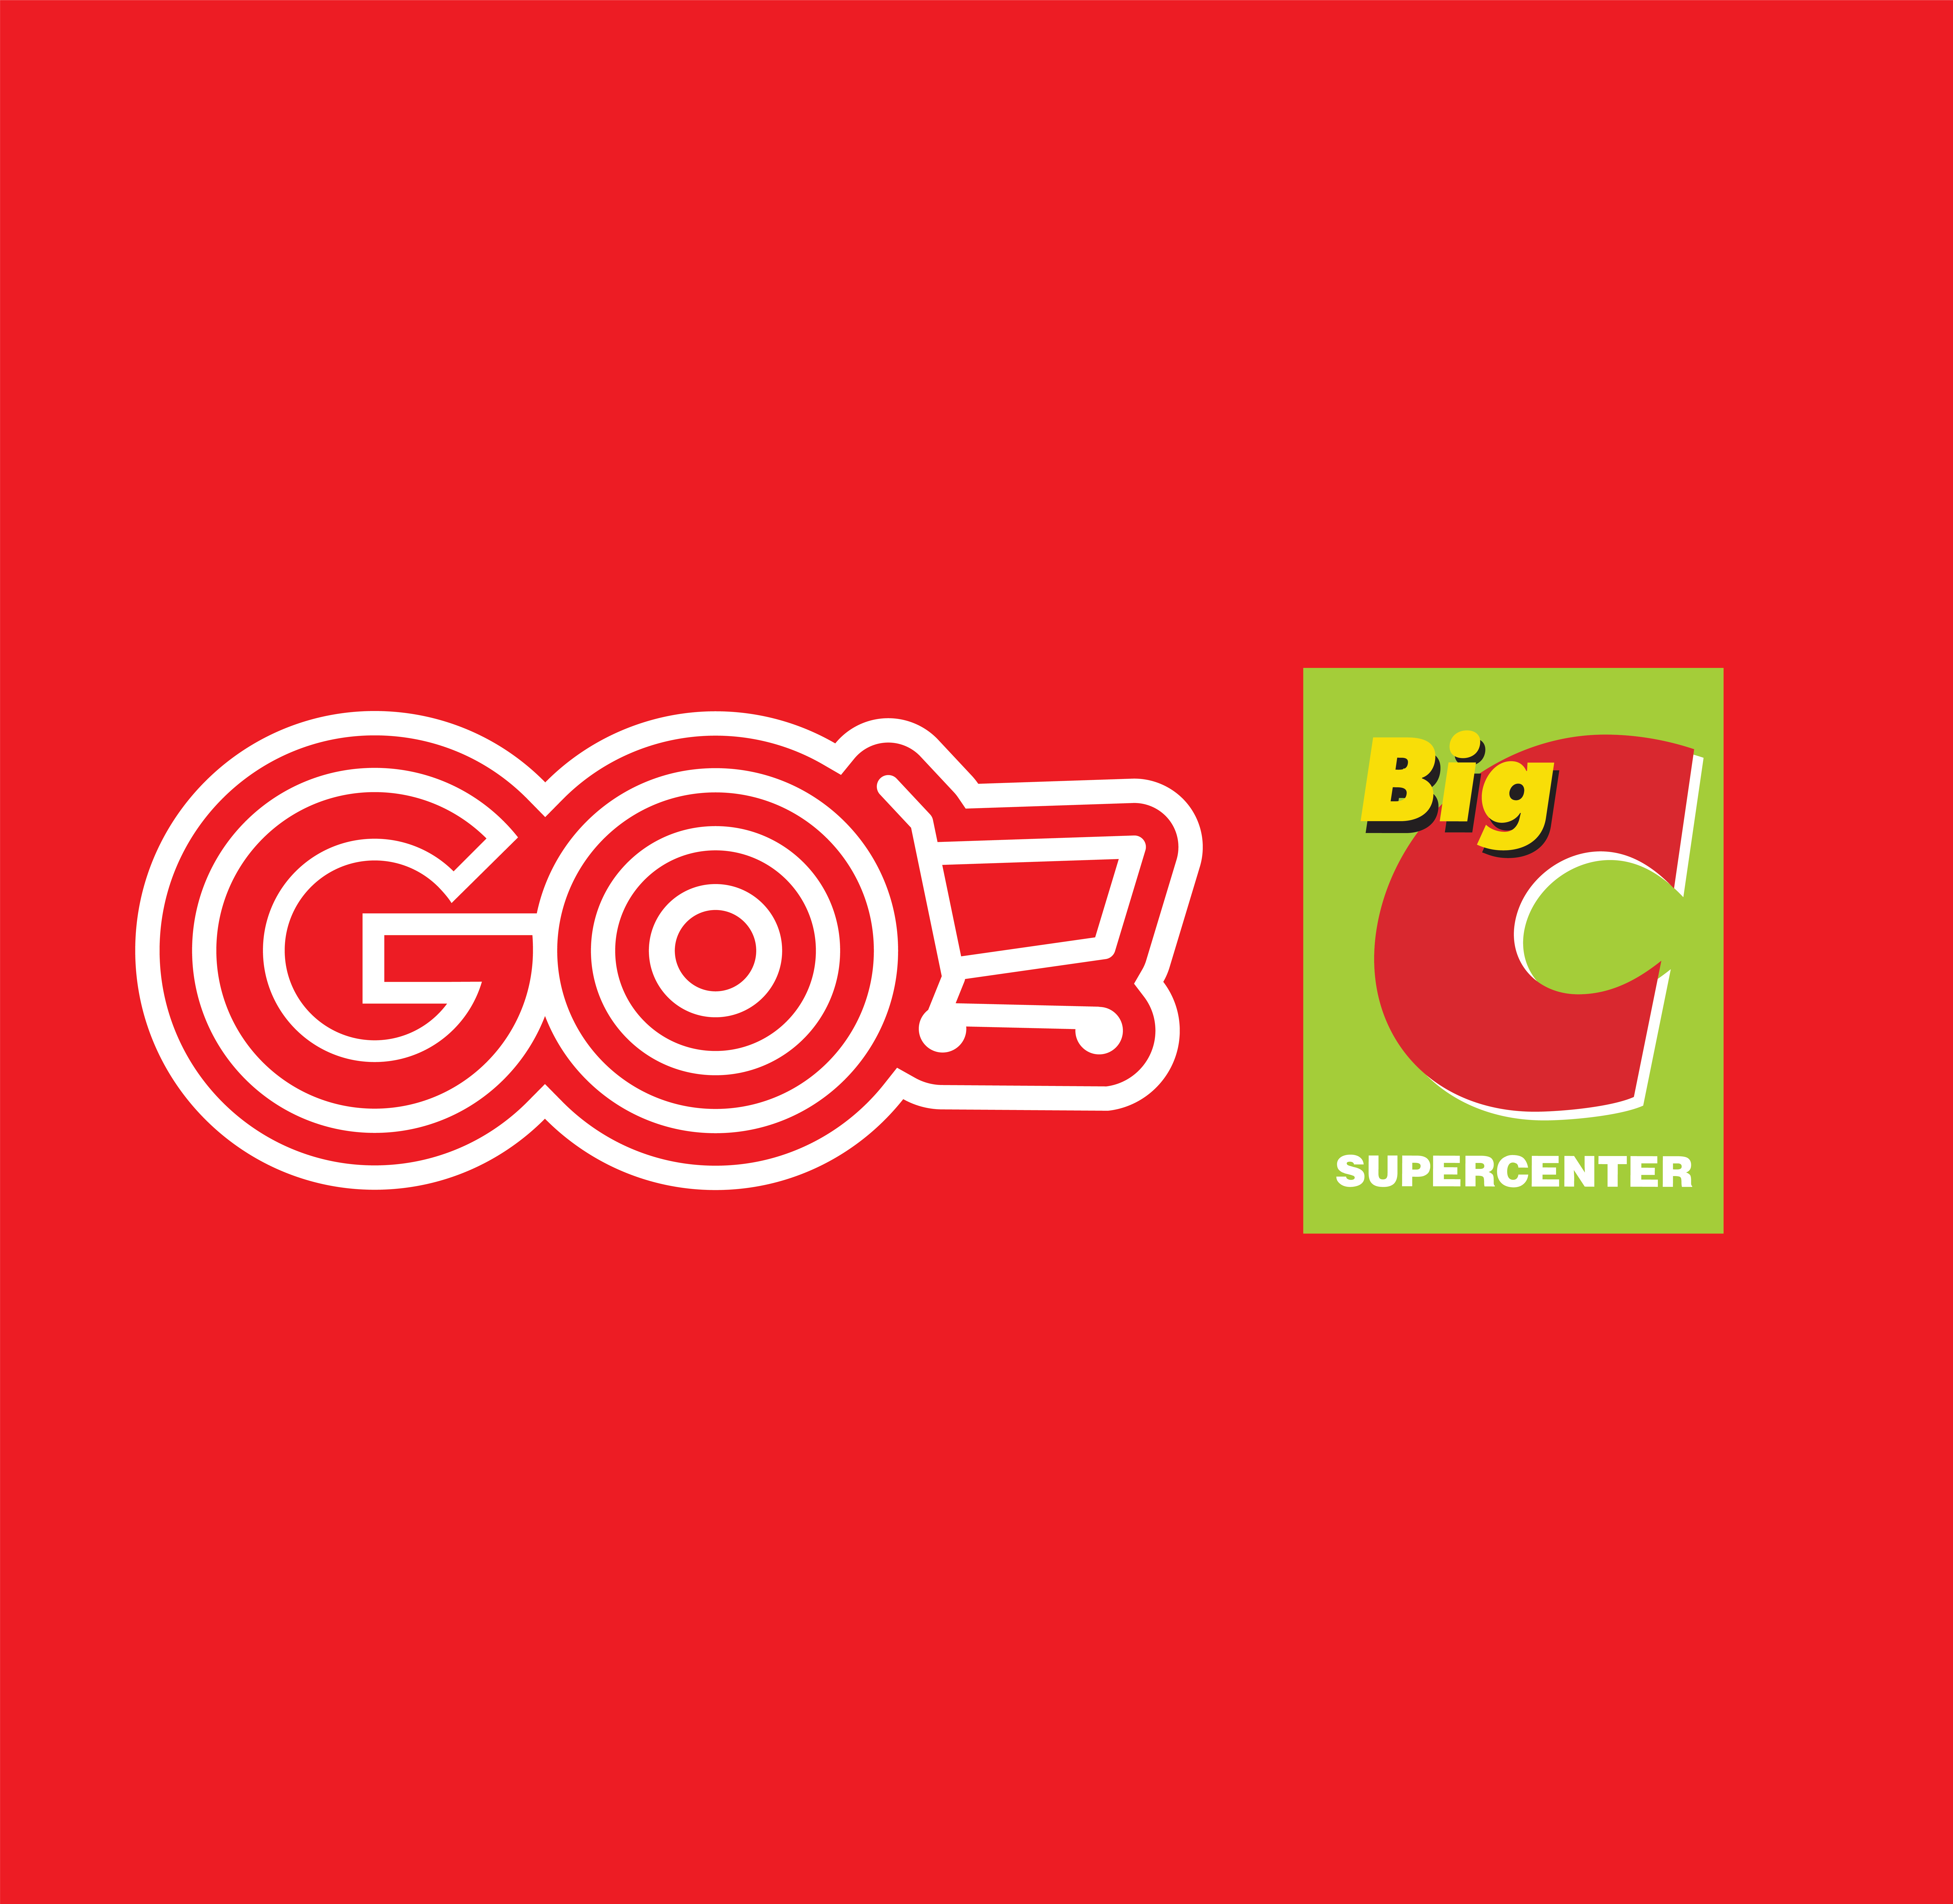 Go! Mỹ Tho – Trưởng Nhóm Bán Hàng Đa Kênh/Omni Channel Sales Head – Hệ Thống Đại Siêu Thị Go!/Big C Việt Nam